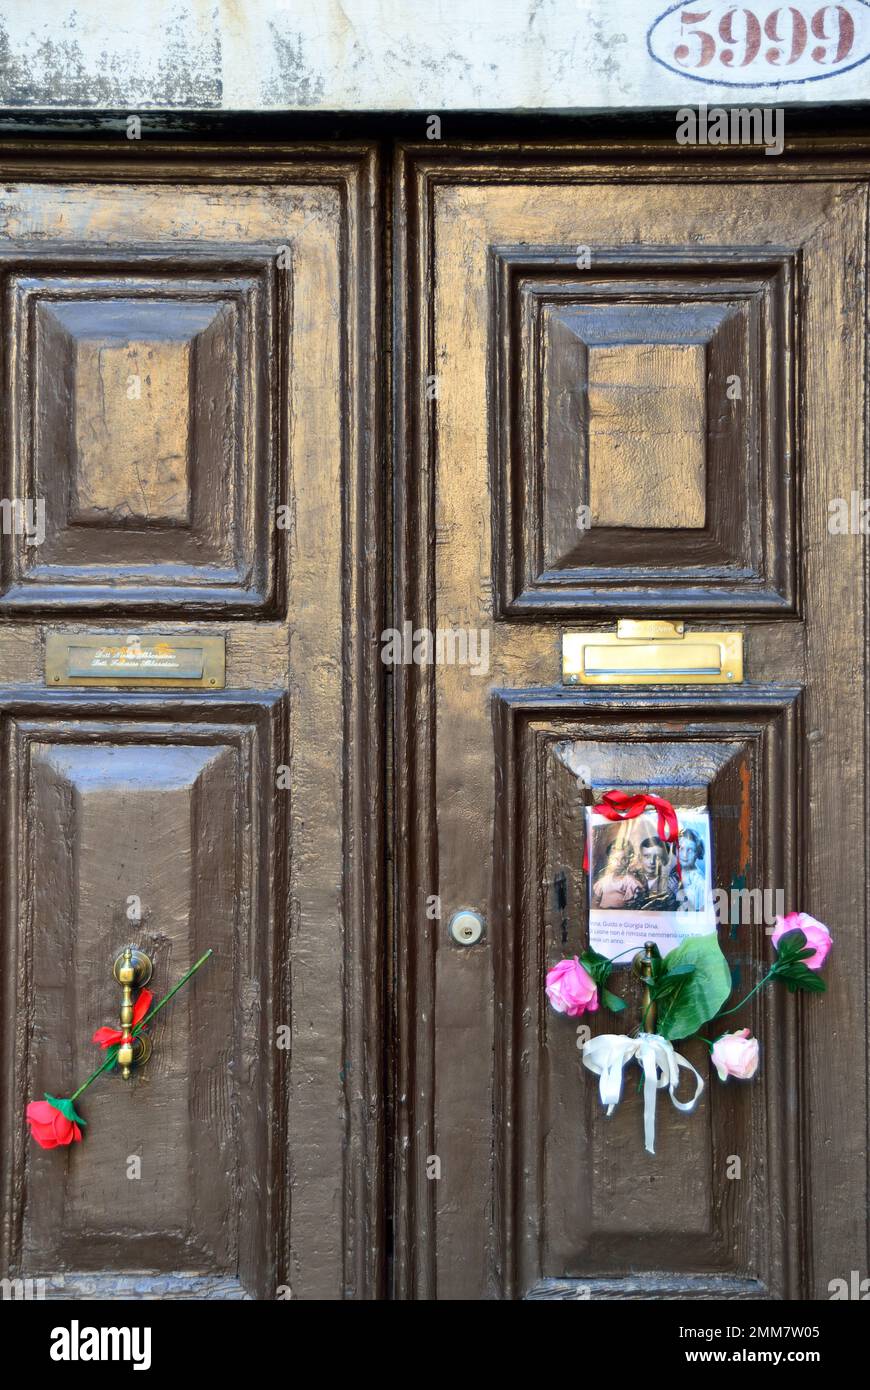 Am Holocaust-Gedenktag 2023 steckte eine anonyme Hand das Bild von drei Kindern und ein paar Blumen an die alte Tür, Nummer 5999 Cannaregio, in Venedig. Die Kinder wurden 1943 mit ihren Eltern und ihrem einjährigen Bruder nach Auschwitz deportiert. Sie waren 14, 10, 7 Jahre alt. Sie wurden am 26. Februar 1944 in Auschwitz mit ihrem einjährigen Bruder getötet. Vor einigen Jahren wurden 7 „Steine“ am Eingang ihres Hauses platziert. Auf dem Foto steht: " Anna, Guido und Giorgia Dina. Leone war ein Jahr alt und wir werden nie wissen, welches Gesicht er hatte. Stockfoto